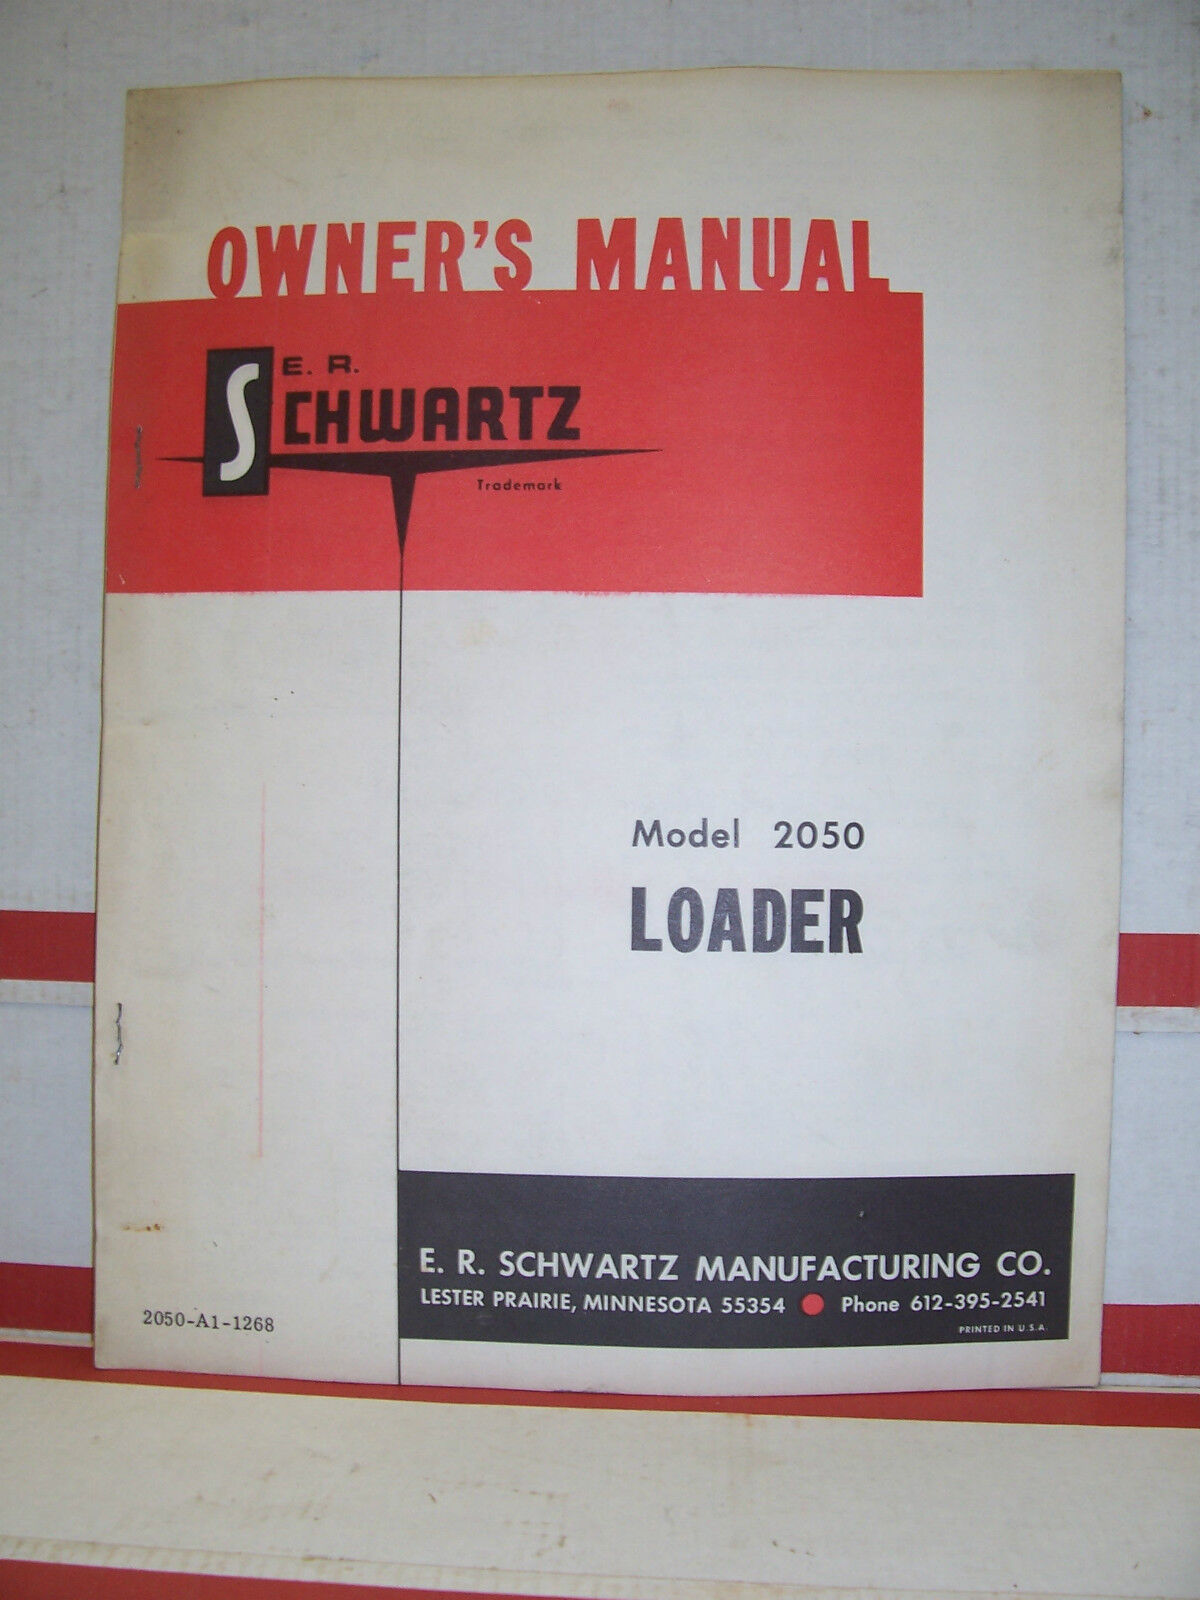 E. R. Schwartz Loader Model 2050 Owner\'s Manual Parts List Tractor